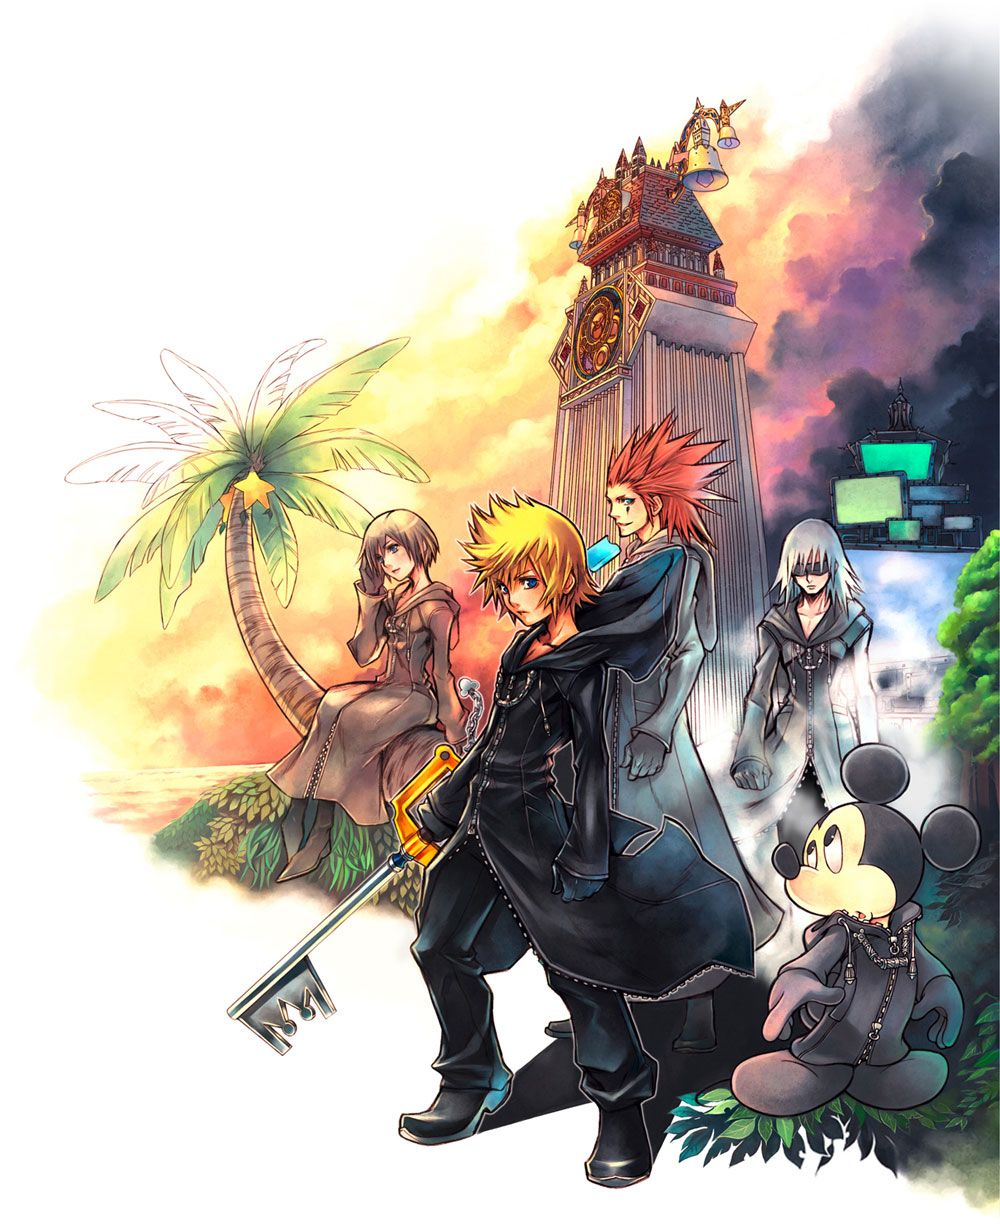 Kingdom Hearts 3582 Days   Main Illustration Kingdom hearts